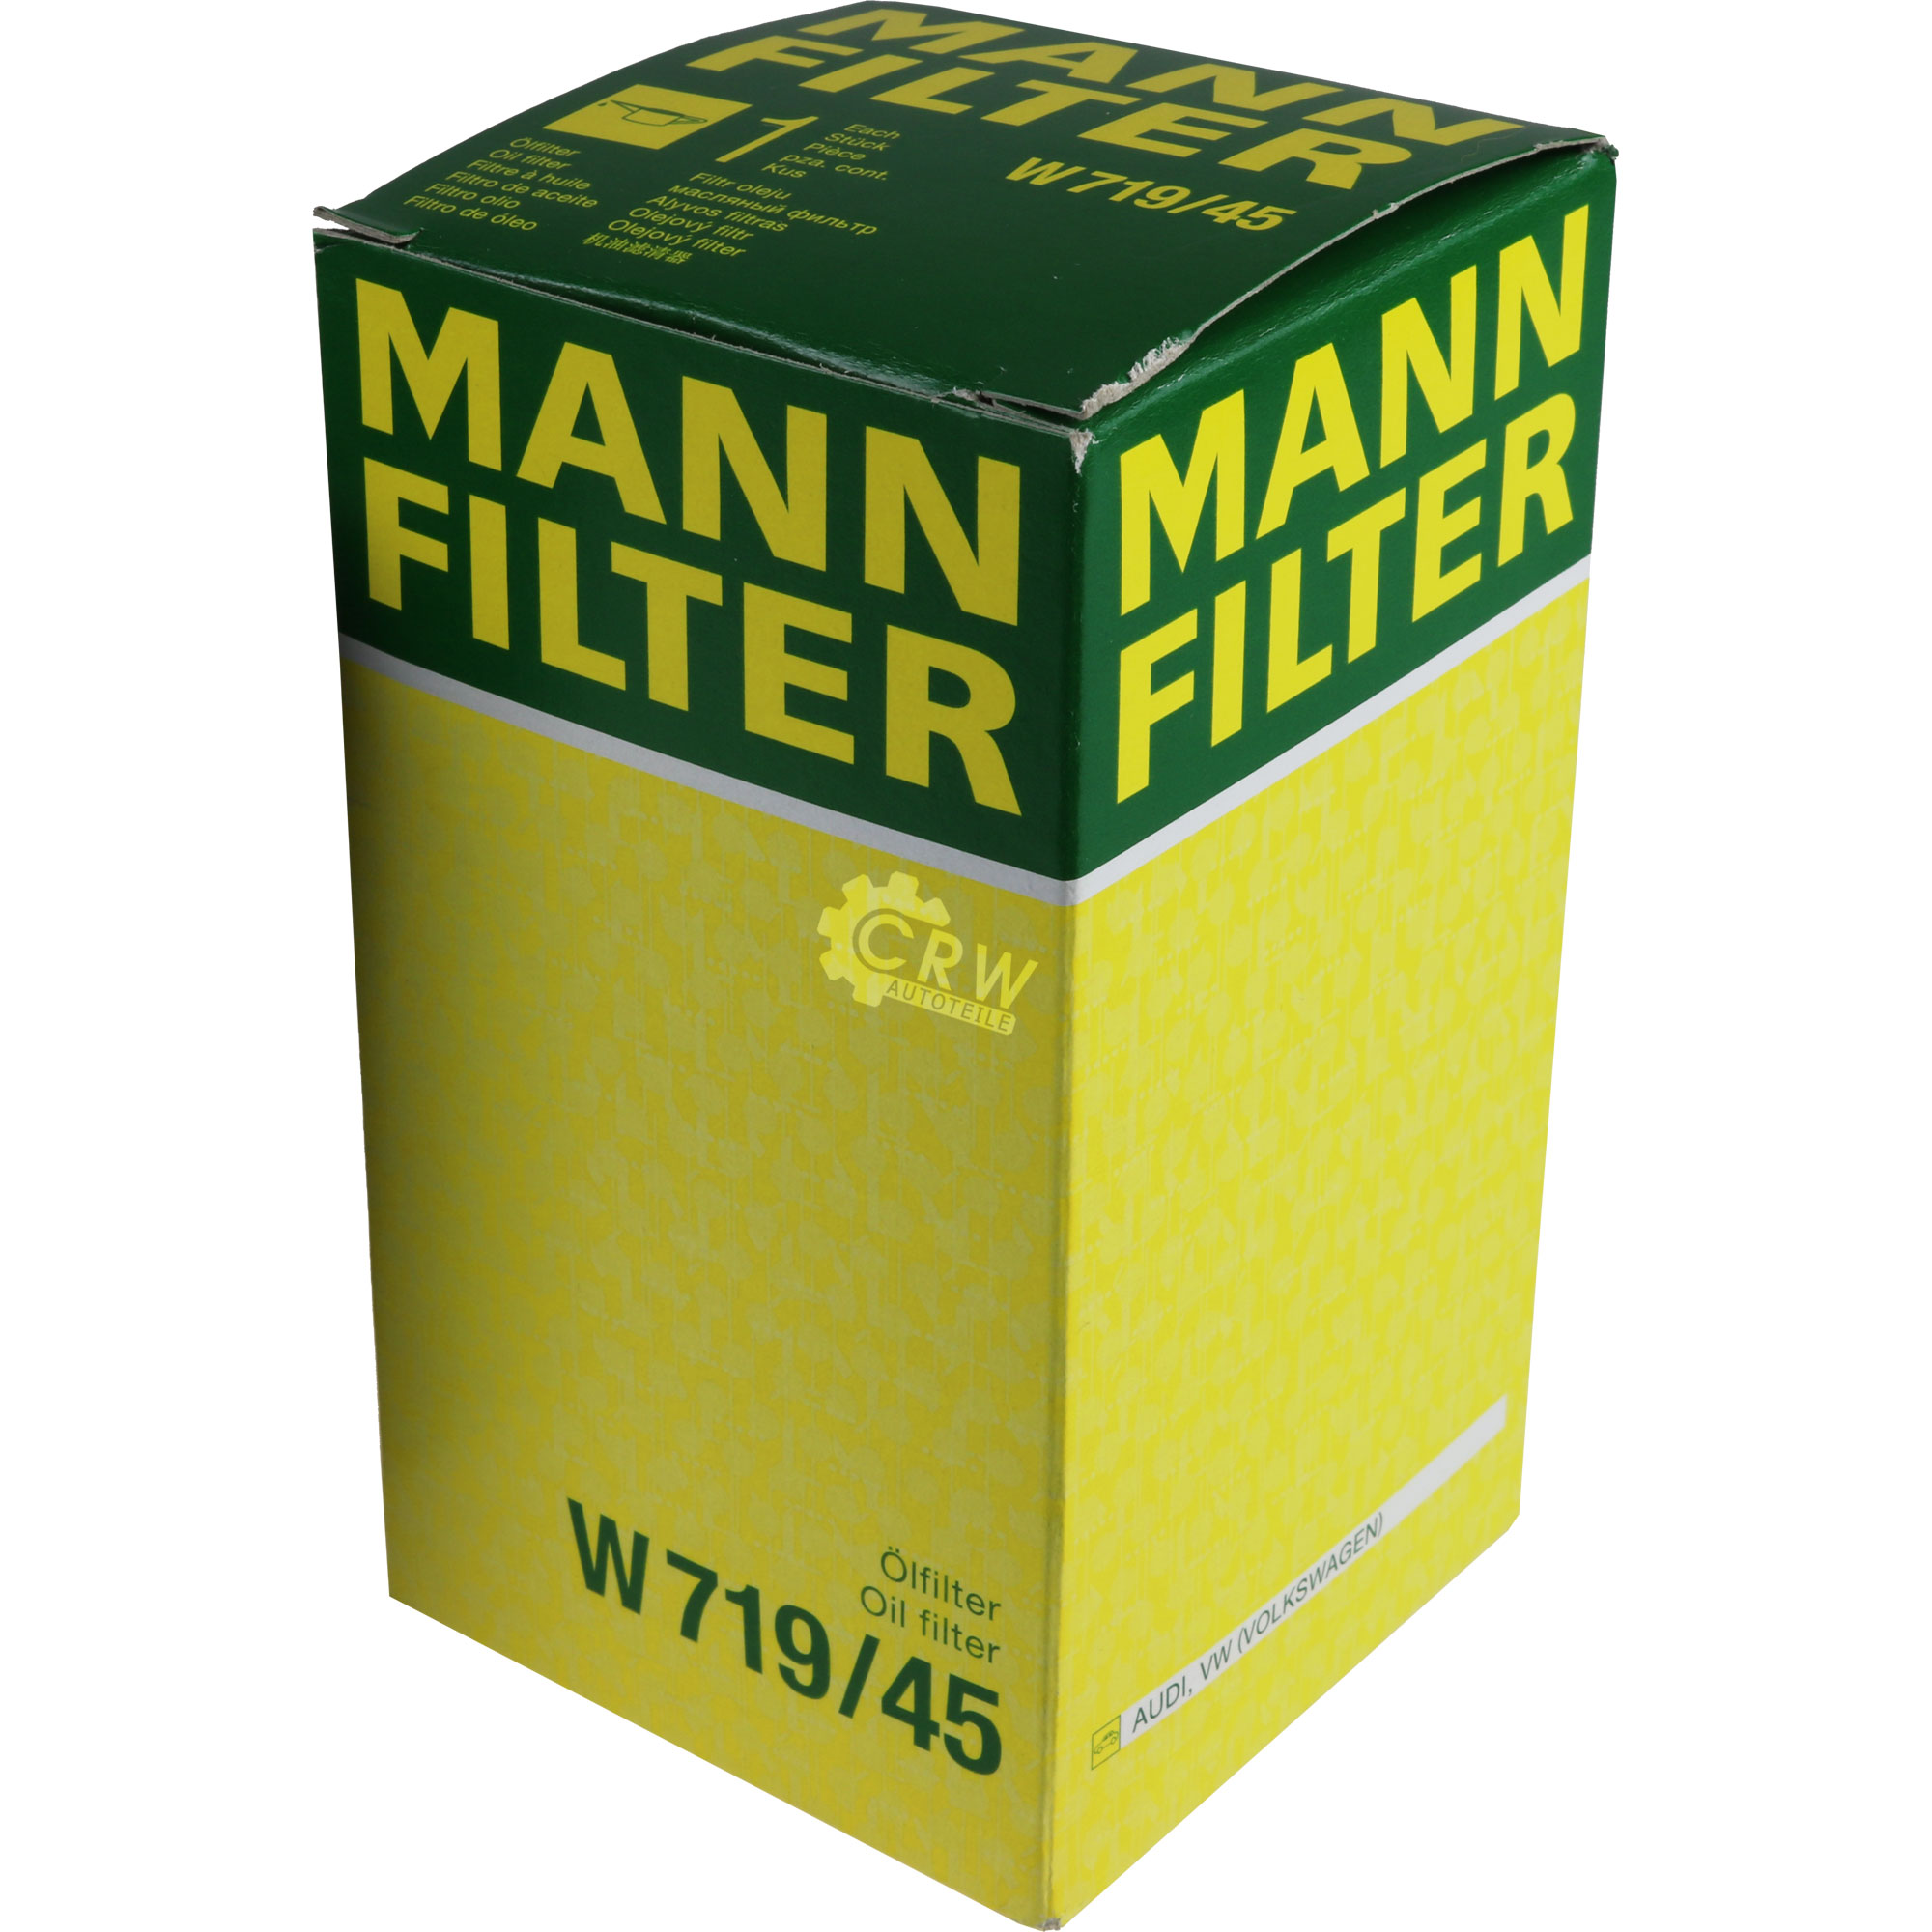 MANN-FILTER Ölfilter W 719/45 Oil Filter